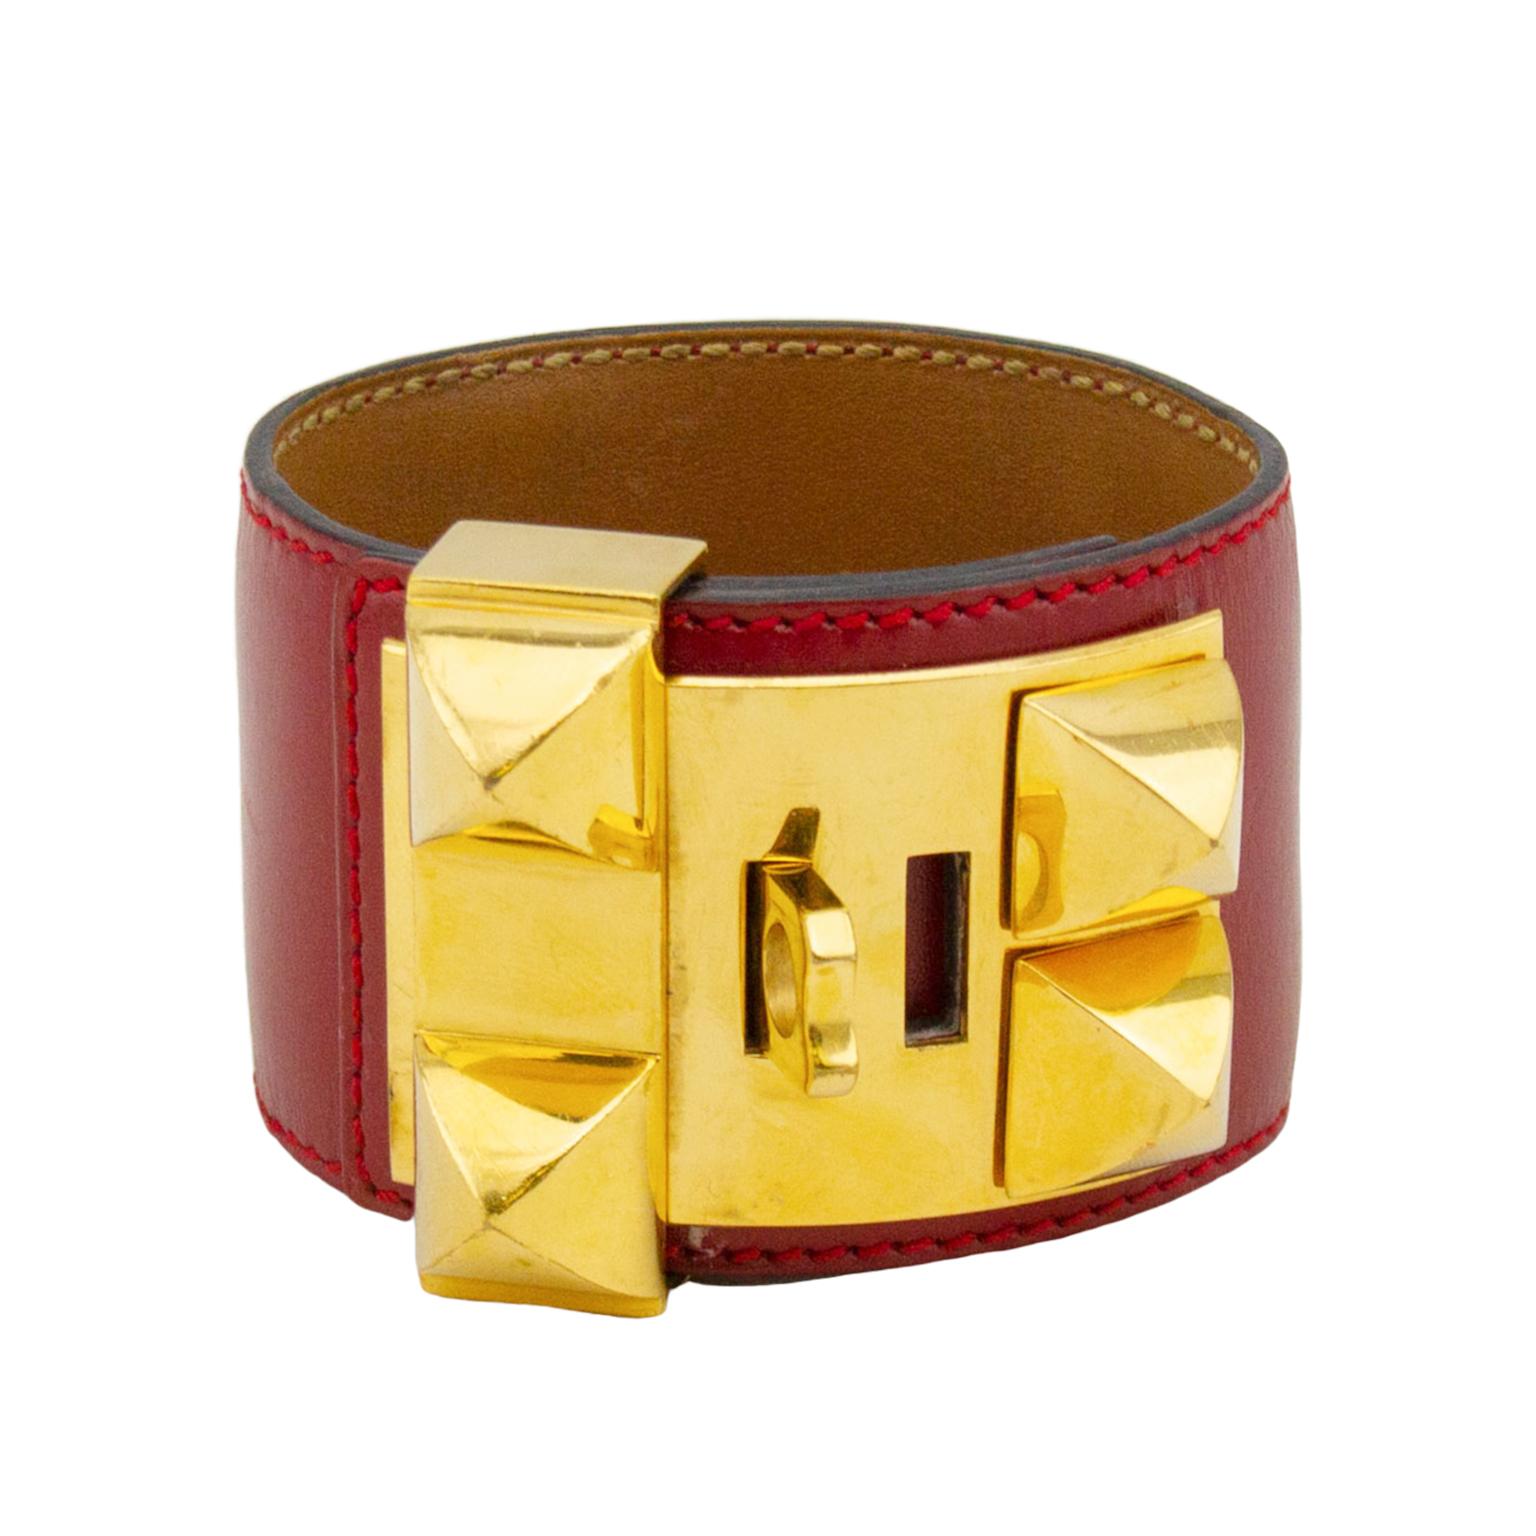 Classique et toujours à collectionner, le bracelet manchette Collier de Chien d'Hermès est un bijou incontournable. Cette manchette en cuir de buis rouge est dotée d'une quincaillerie de tonalité dorée et peut être réglée sur 4 positions